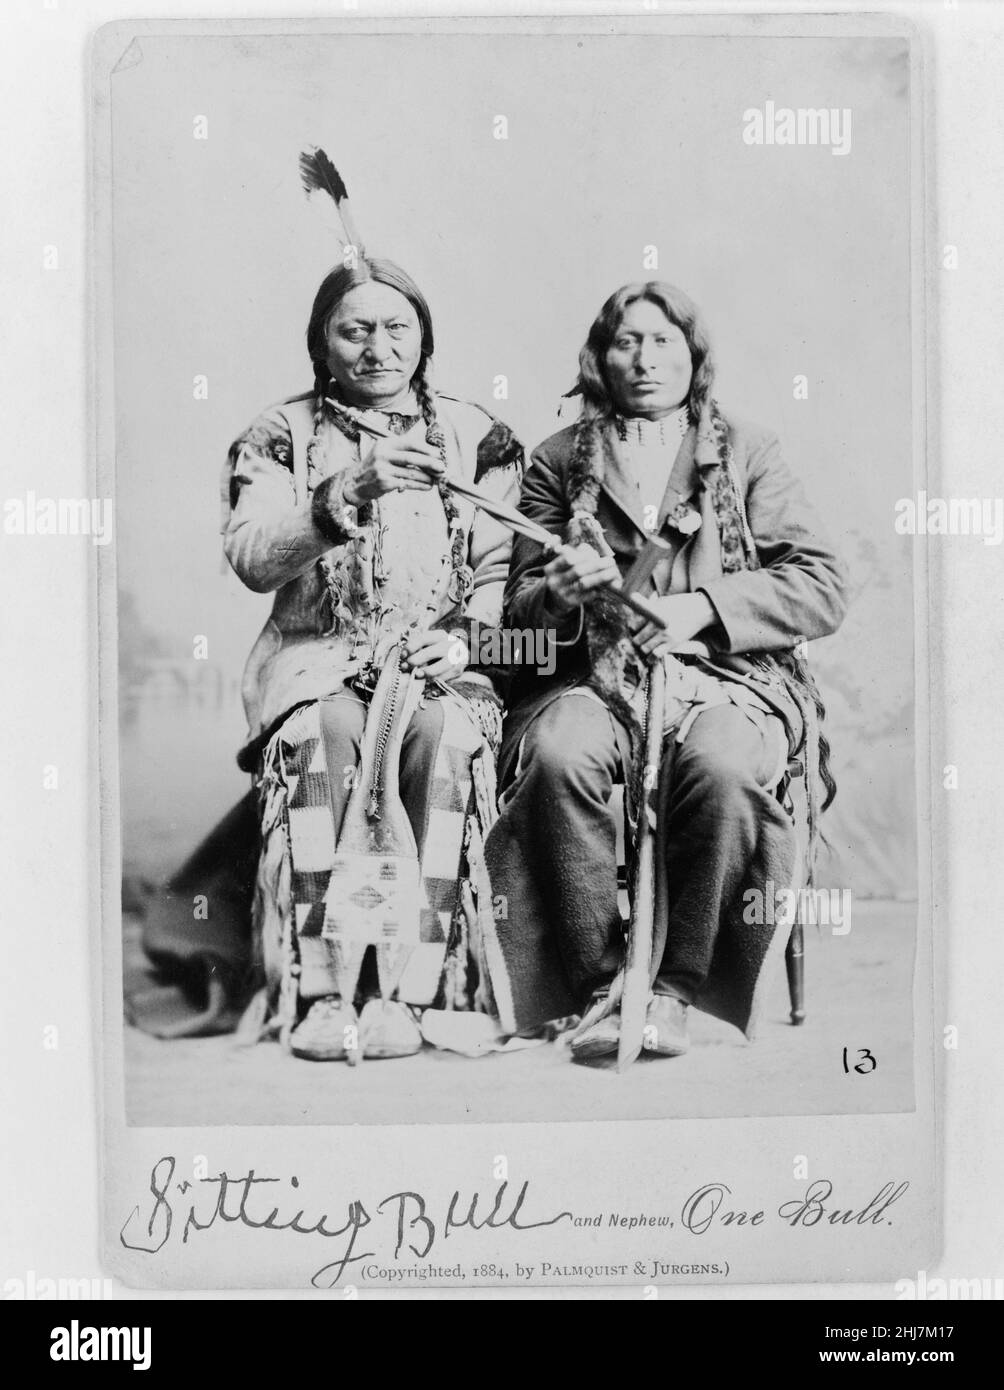 1938 CHIEF ONE BALL & WHITE BULL Native American Photo Sitting Bull Nephew 